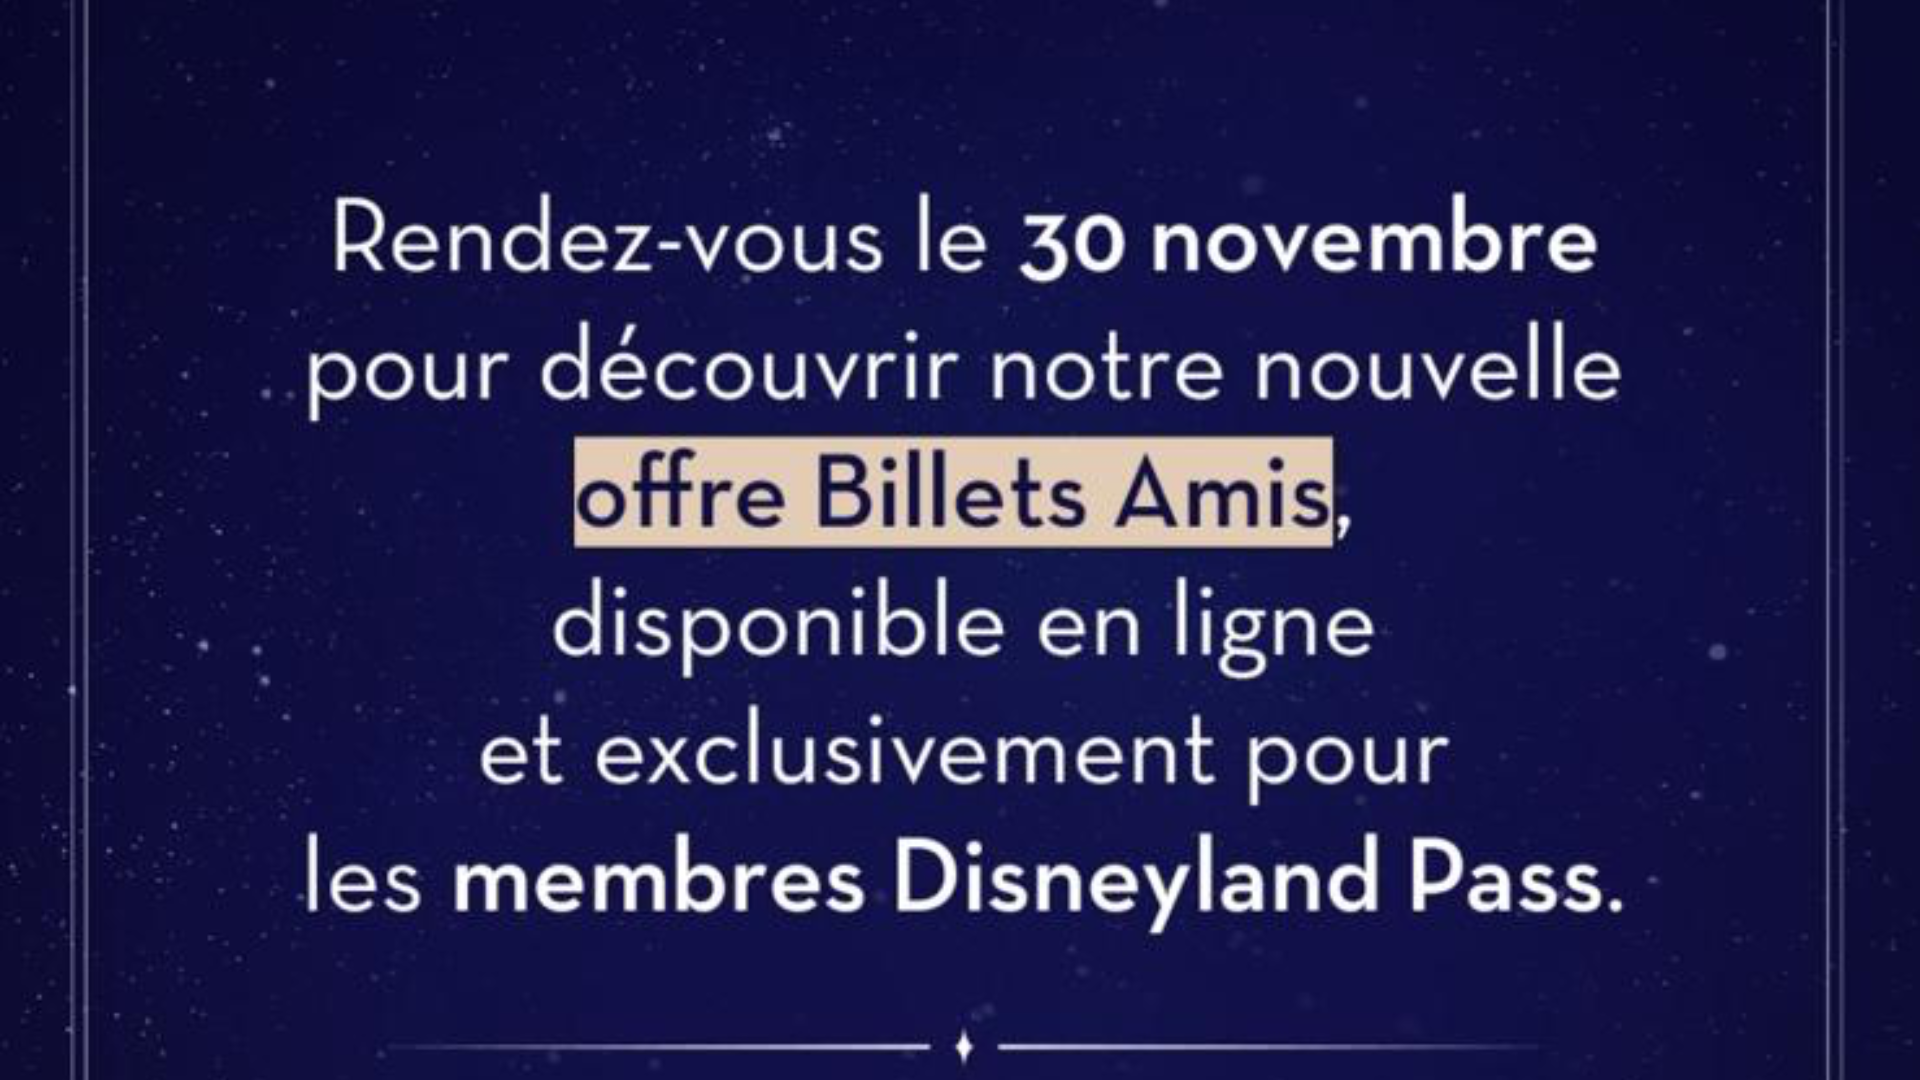 Les offre Billets Amis reviennent - Disneyland Paris